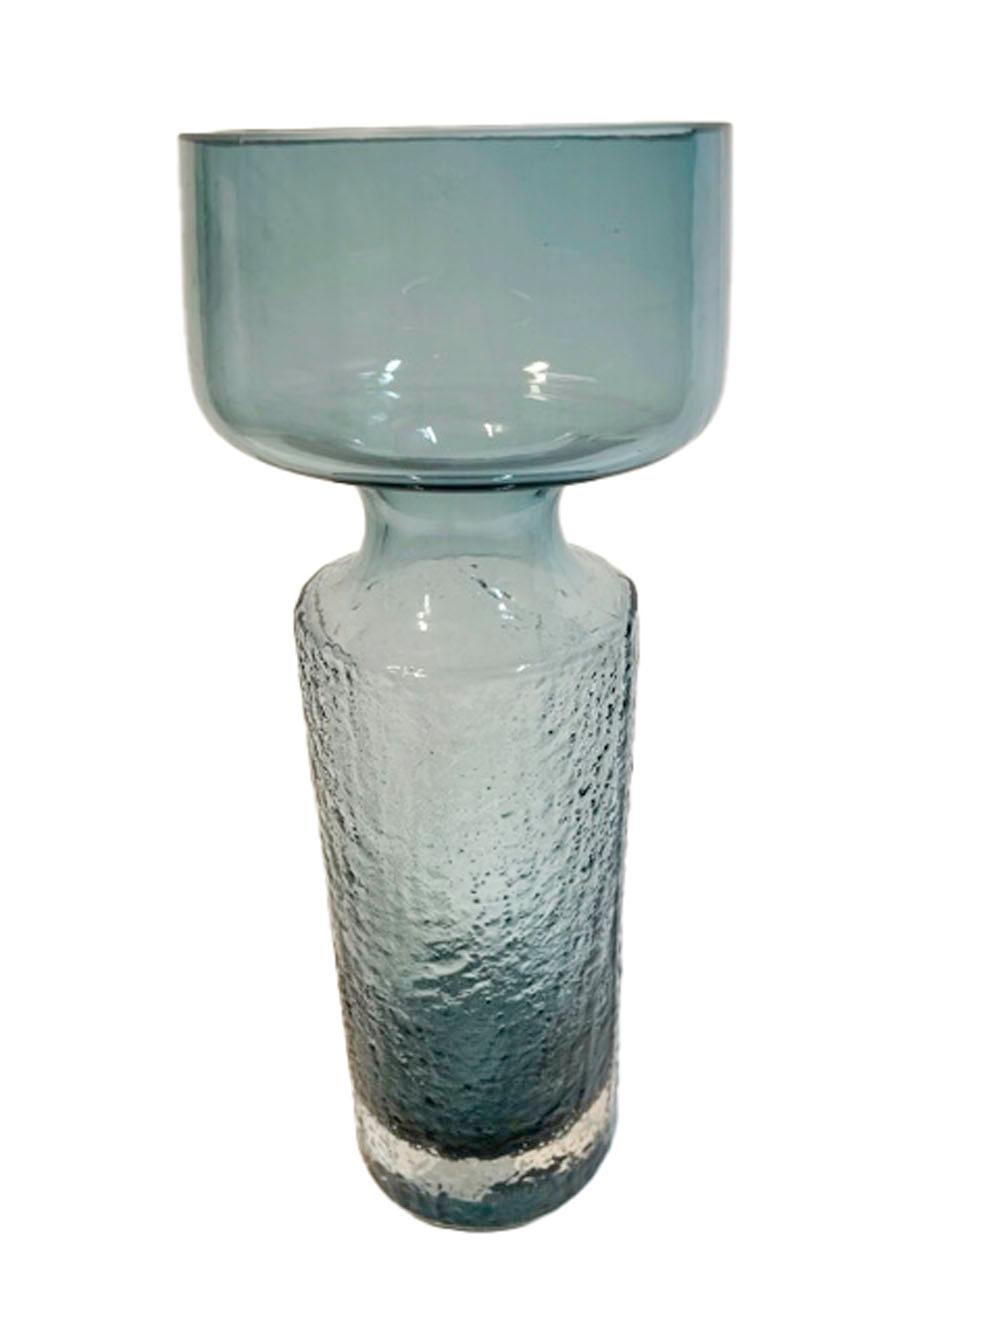 Moderne Vase 'Safari' von Riihimaki aus stahlblauem und klarem Glas aus der Jahrhundertmitte. Die große Vase hat einen zylindrischen Sockel mit Kieselsteinstruktur unter einem verengten Kragen, der sich zu einer größeren Schale hin öffnet. Die